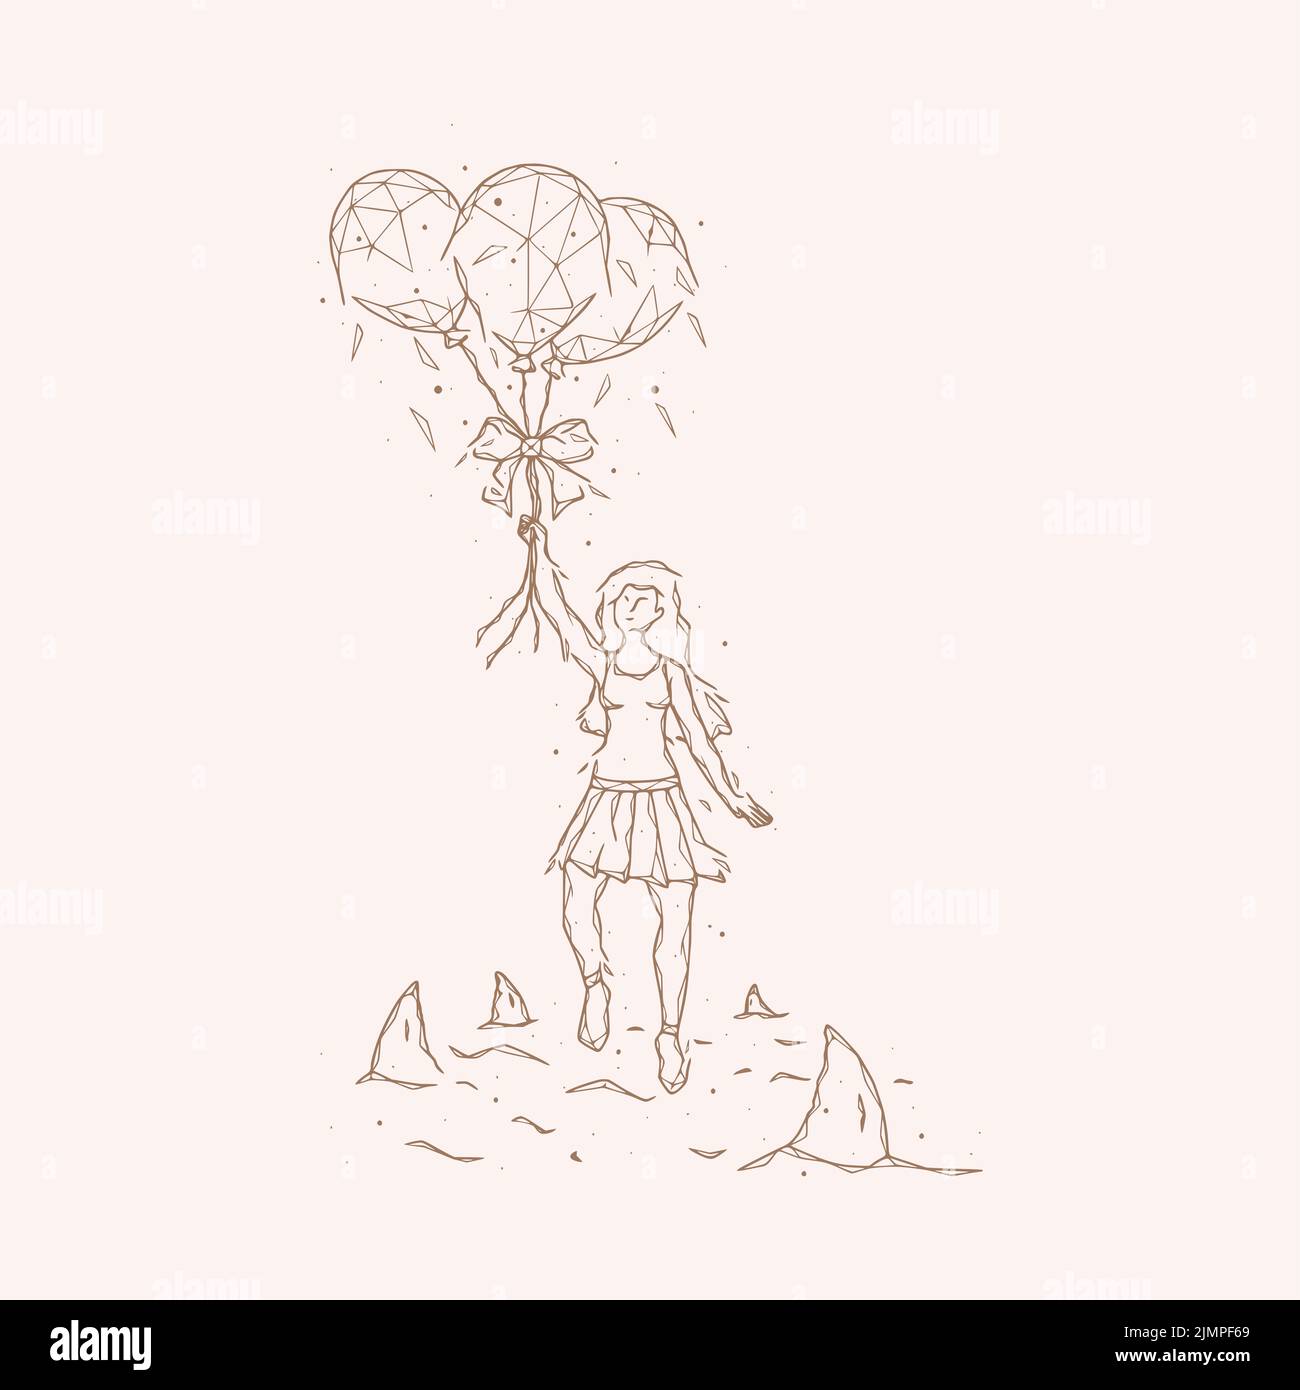 Illustration vectorielle polygonale d'une fille avec des ballons qui vole loin des requins. Concept psychologique d'éviter les problèmes. Banque D'Images